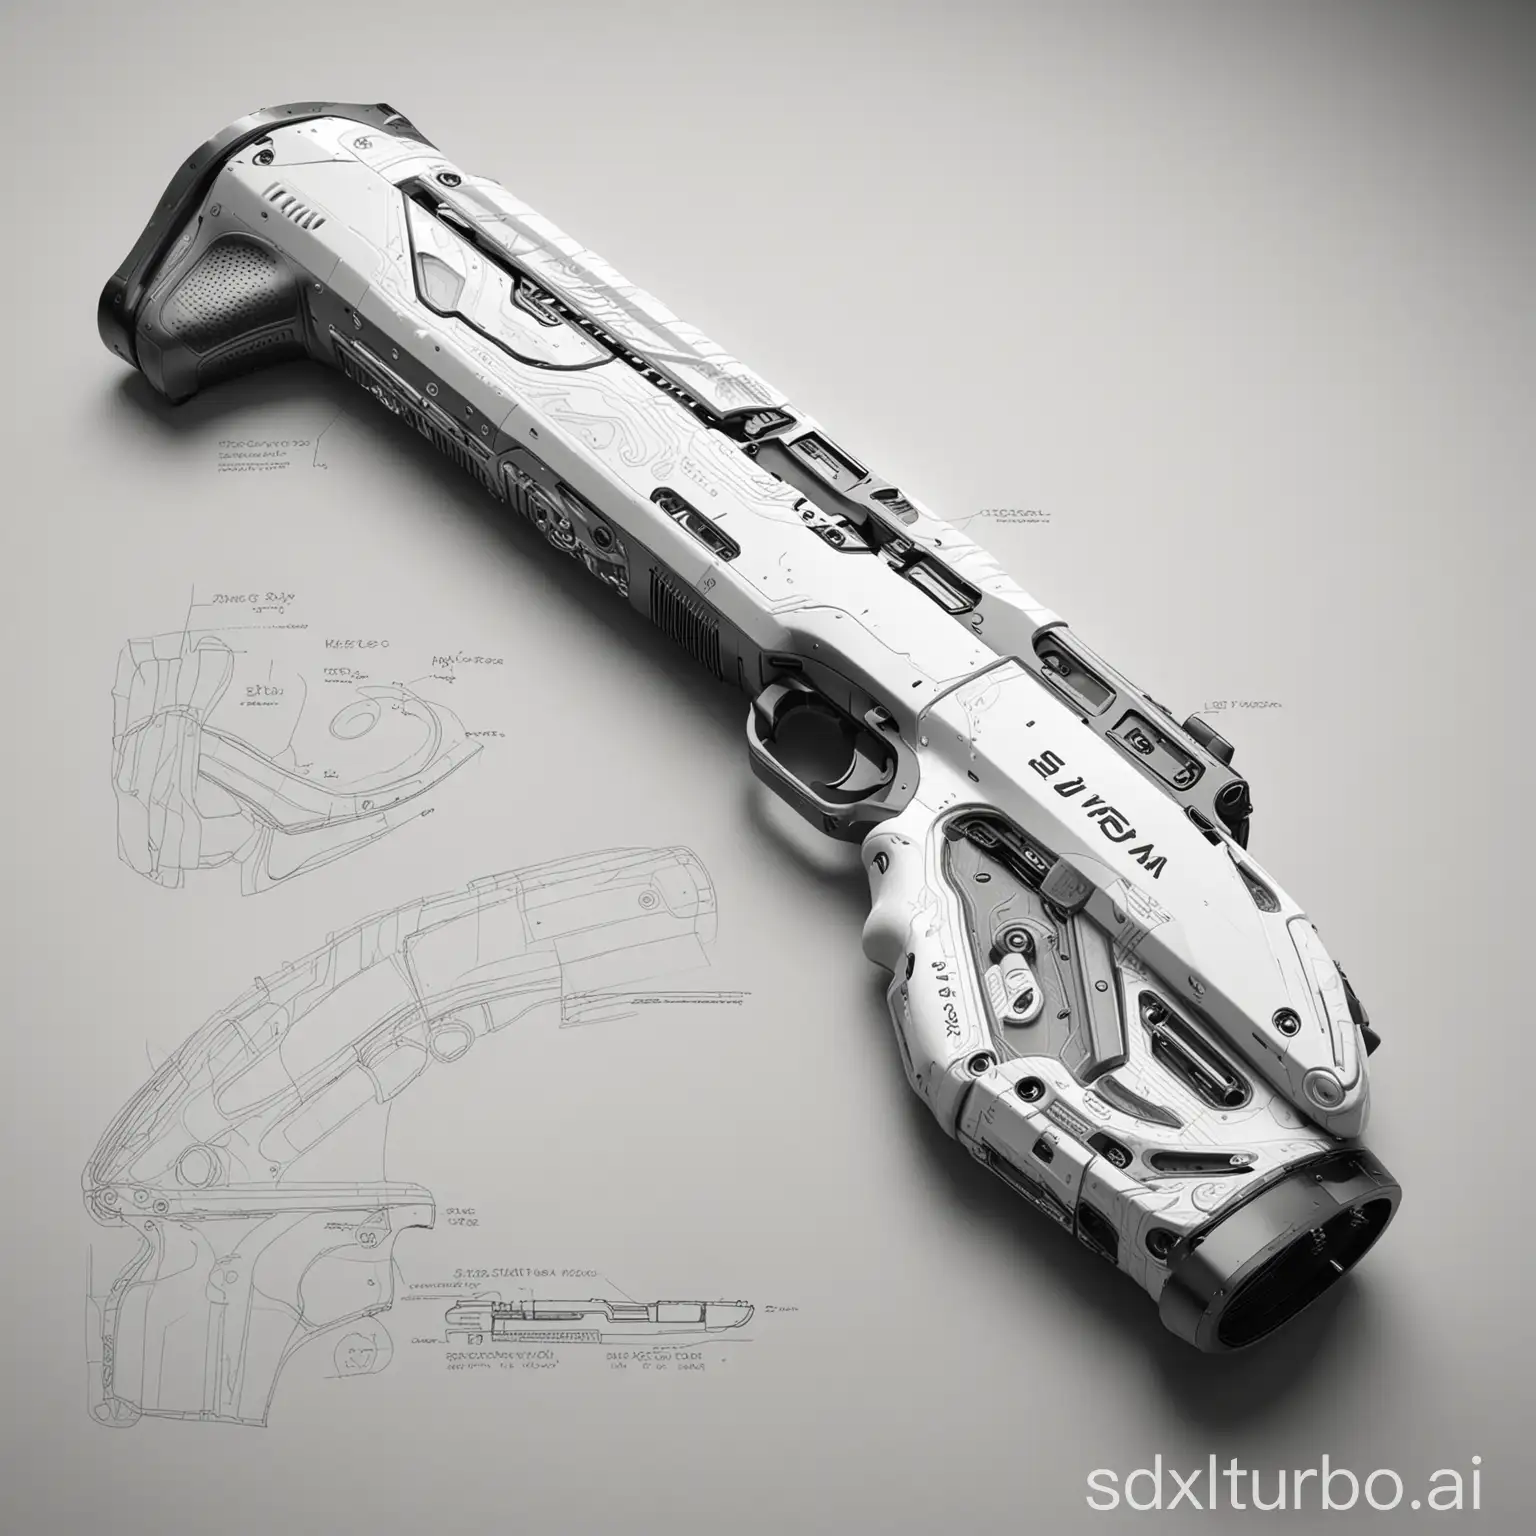 Futuristic-Industrial-Design-Sketch-Embedded-Fashion-Shotgun